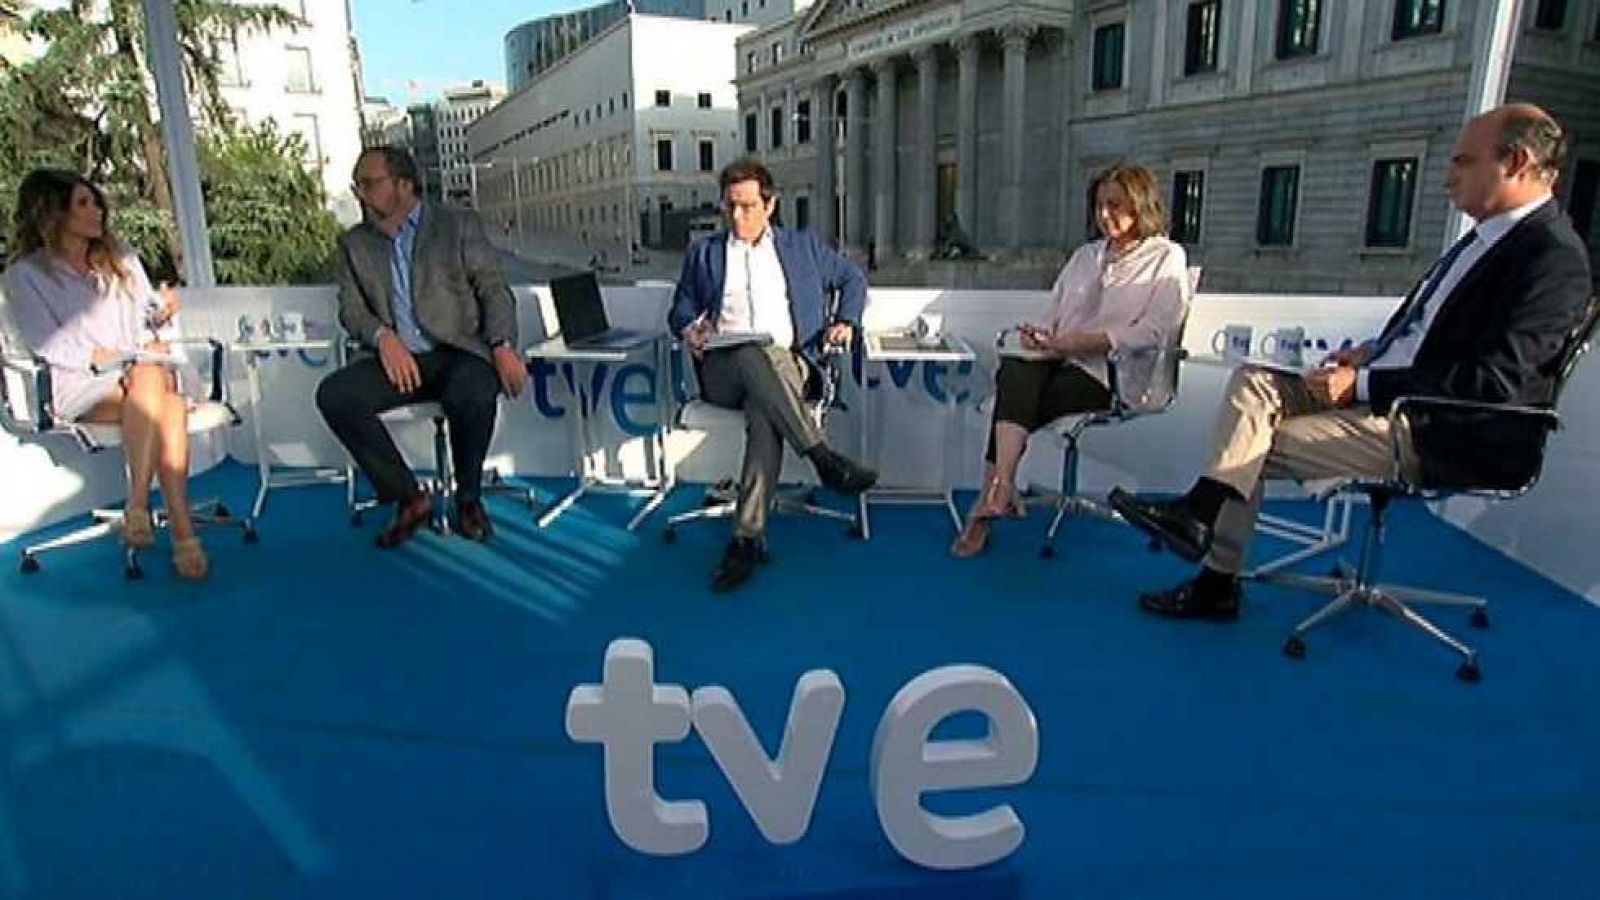 Los desayunos de TVE - Iñigo Méndez de Vigo, ministro de Educación, Cultura y Deporte en funciones